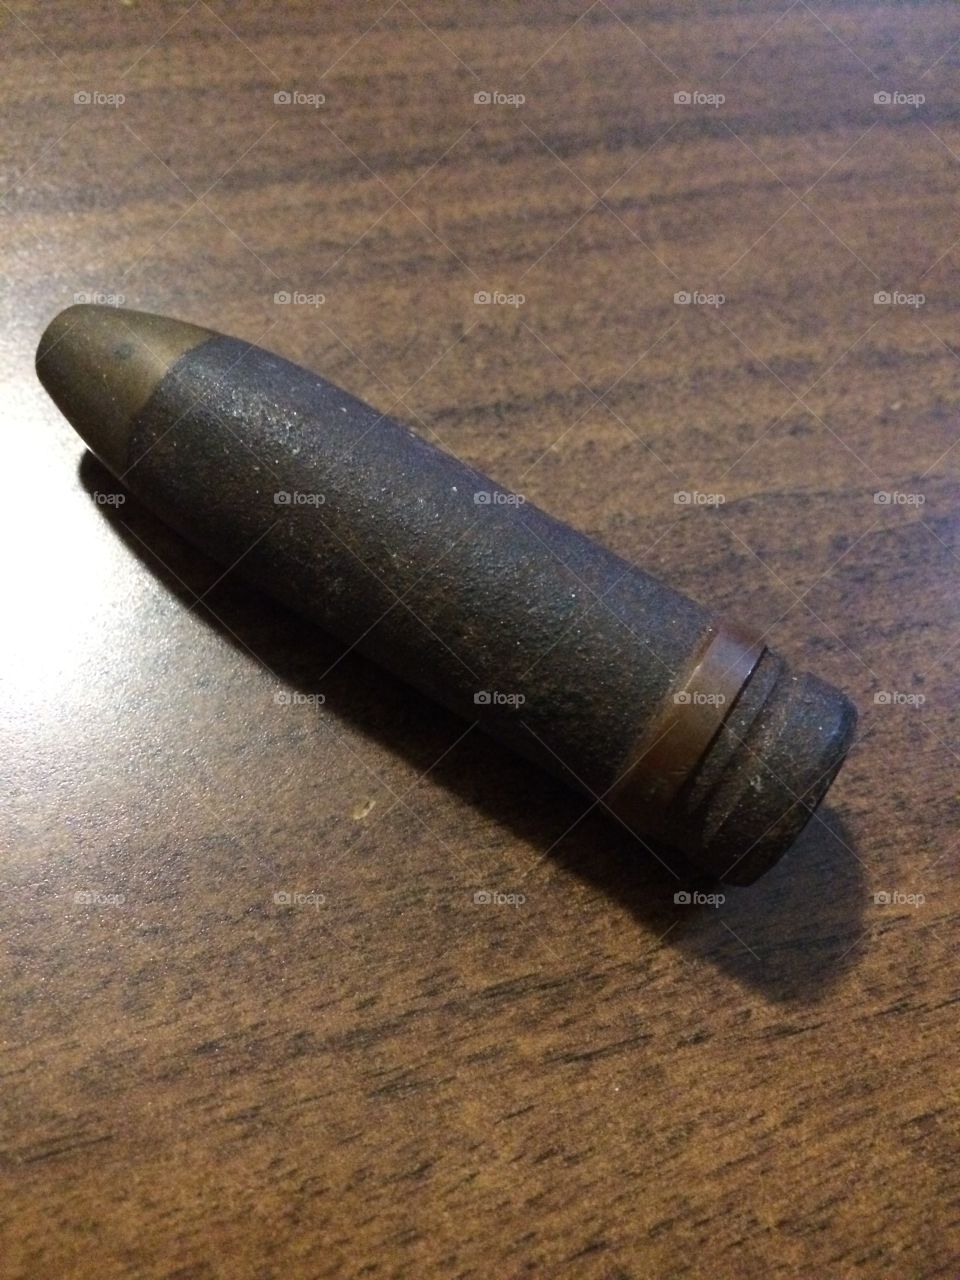 World War II bullet
